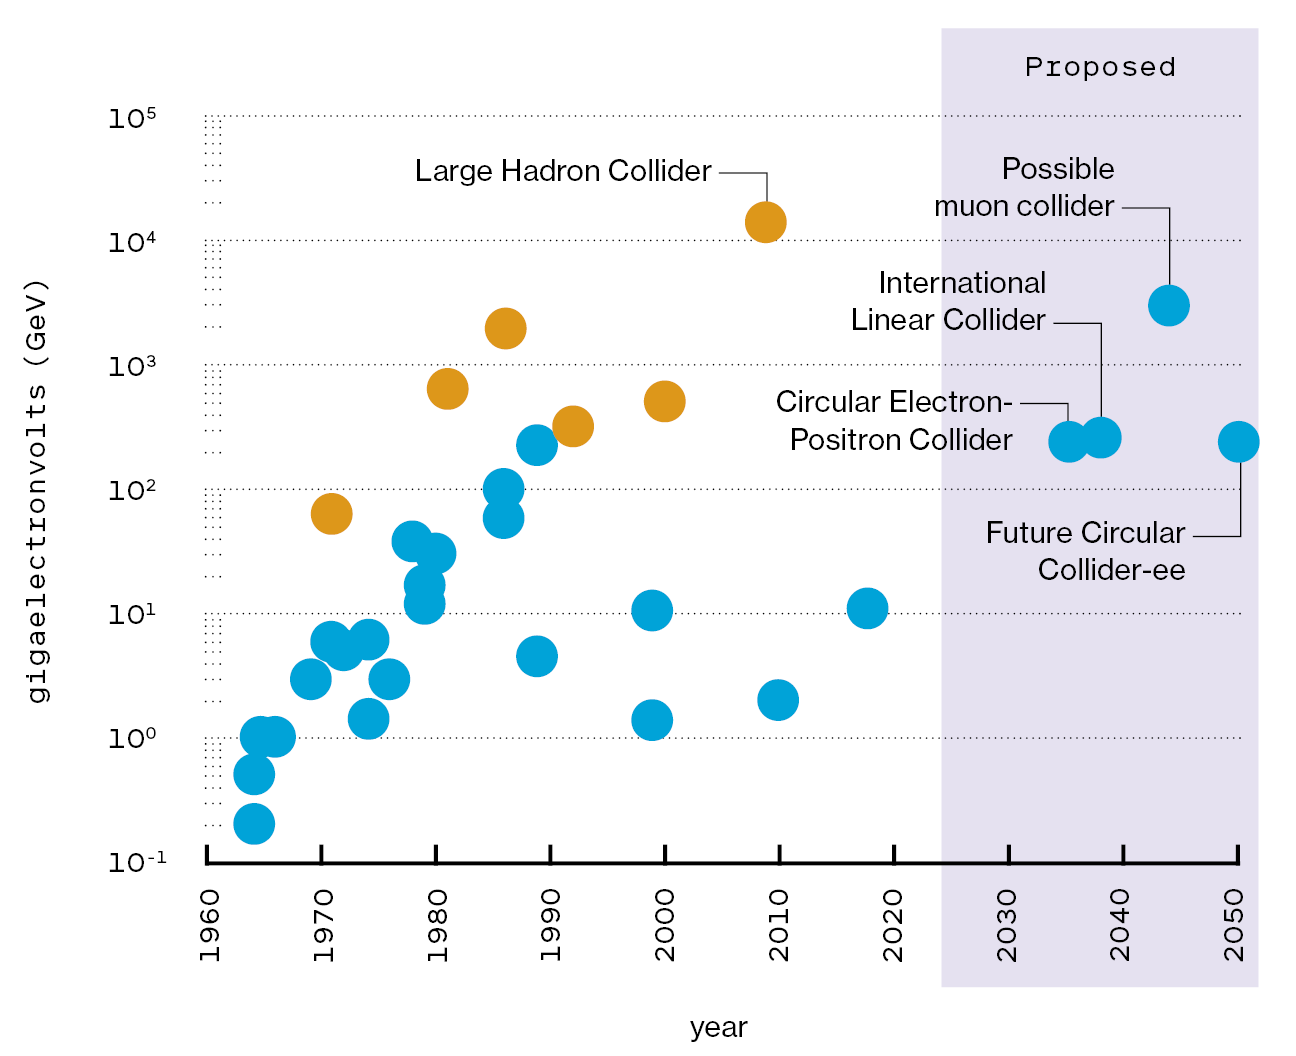 Un gráfico de burbujas que muestra el GeV de 32 colisionadores desde 1960 hasta los colisionadores propuestos para 2050.